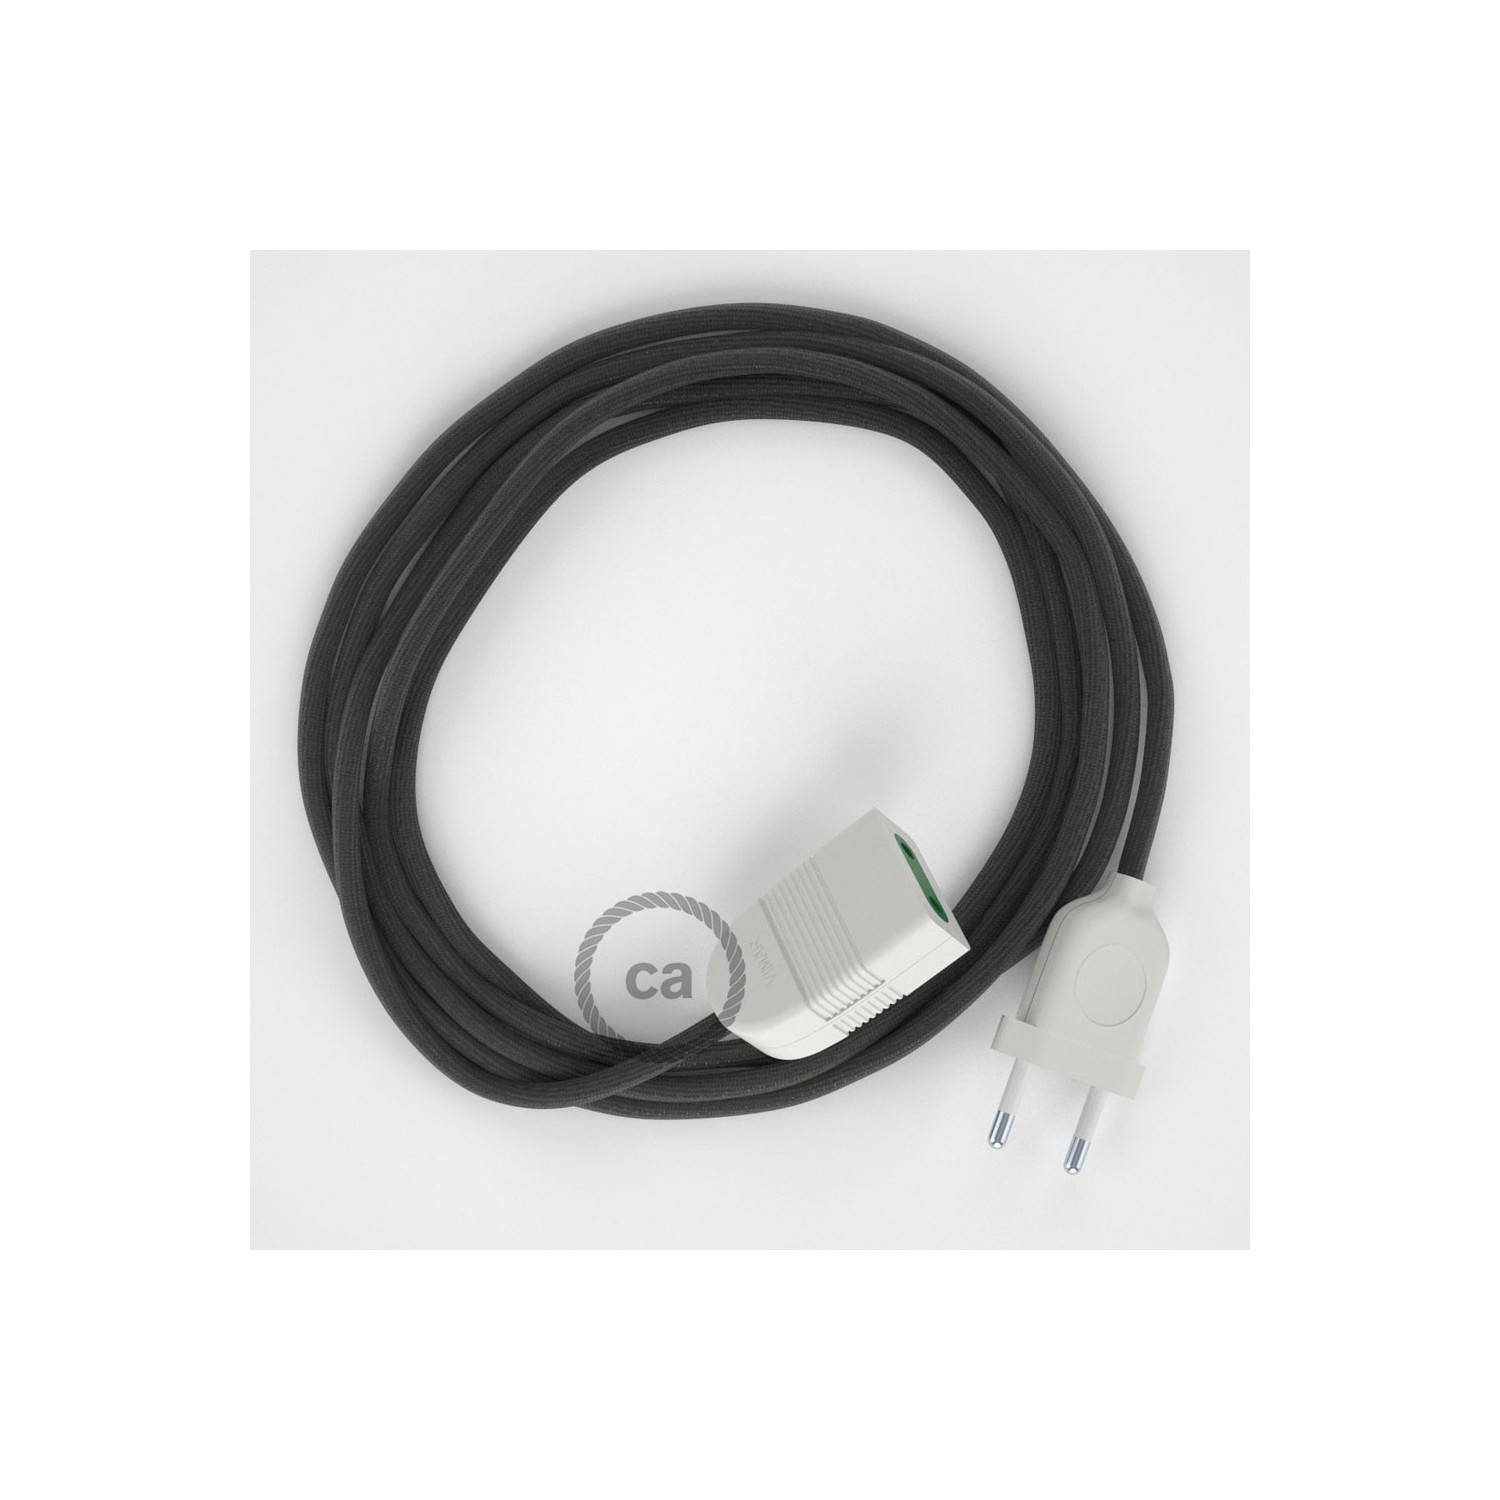 Podaljševalni kabel za napajanje (2P 10A) temno siv rejon RM26 - Made in Italy